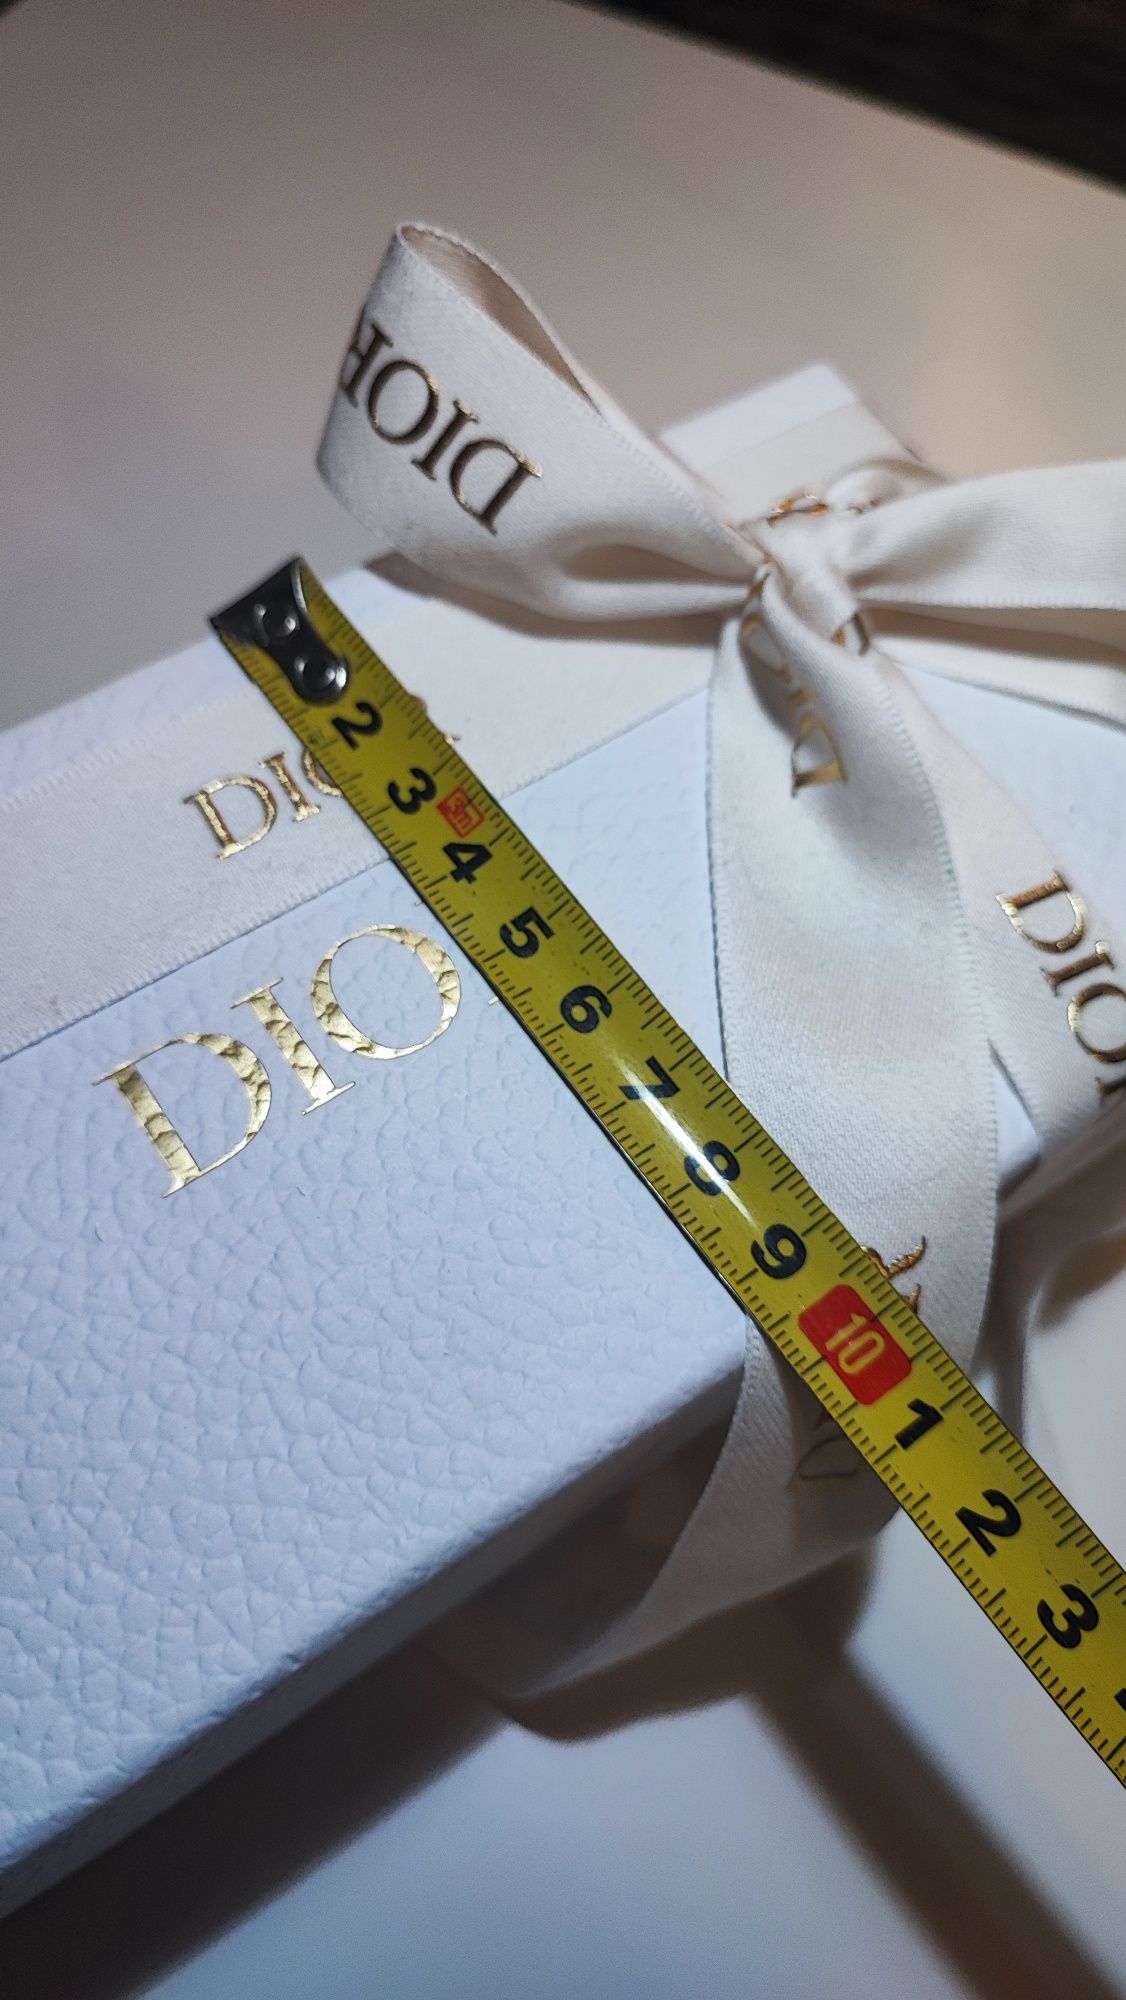 Pudełko Dior ze wstążką karton prezent biały